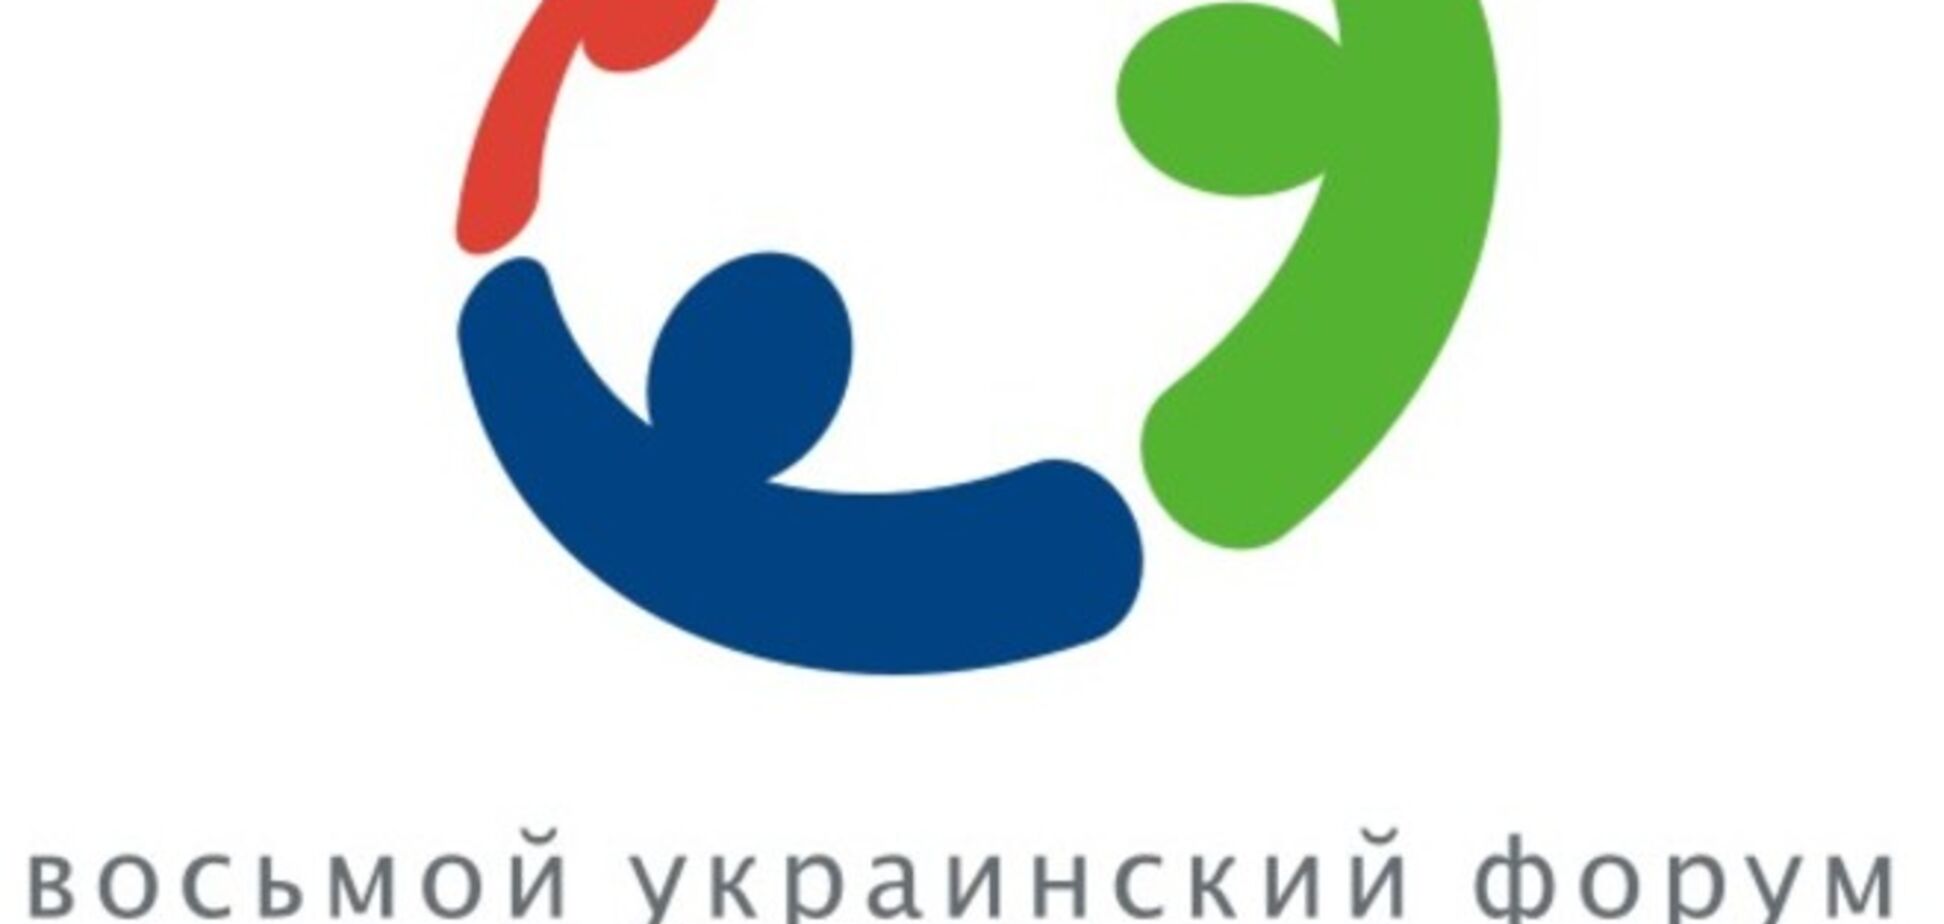 2 апреля состоится восьмой украинский форум маркетинг-директоров